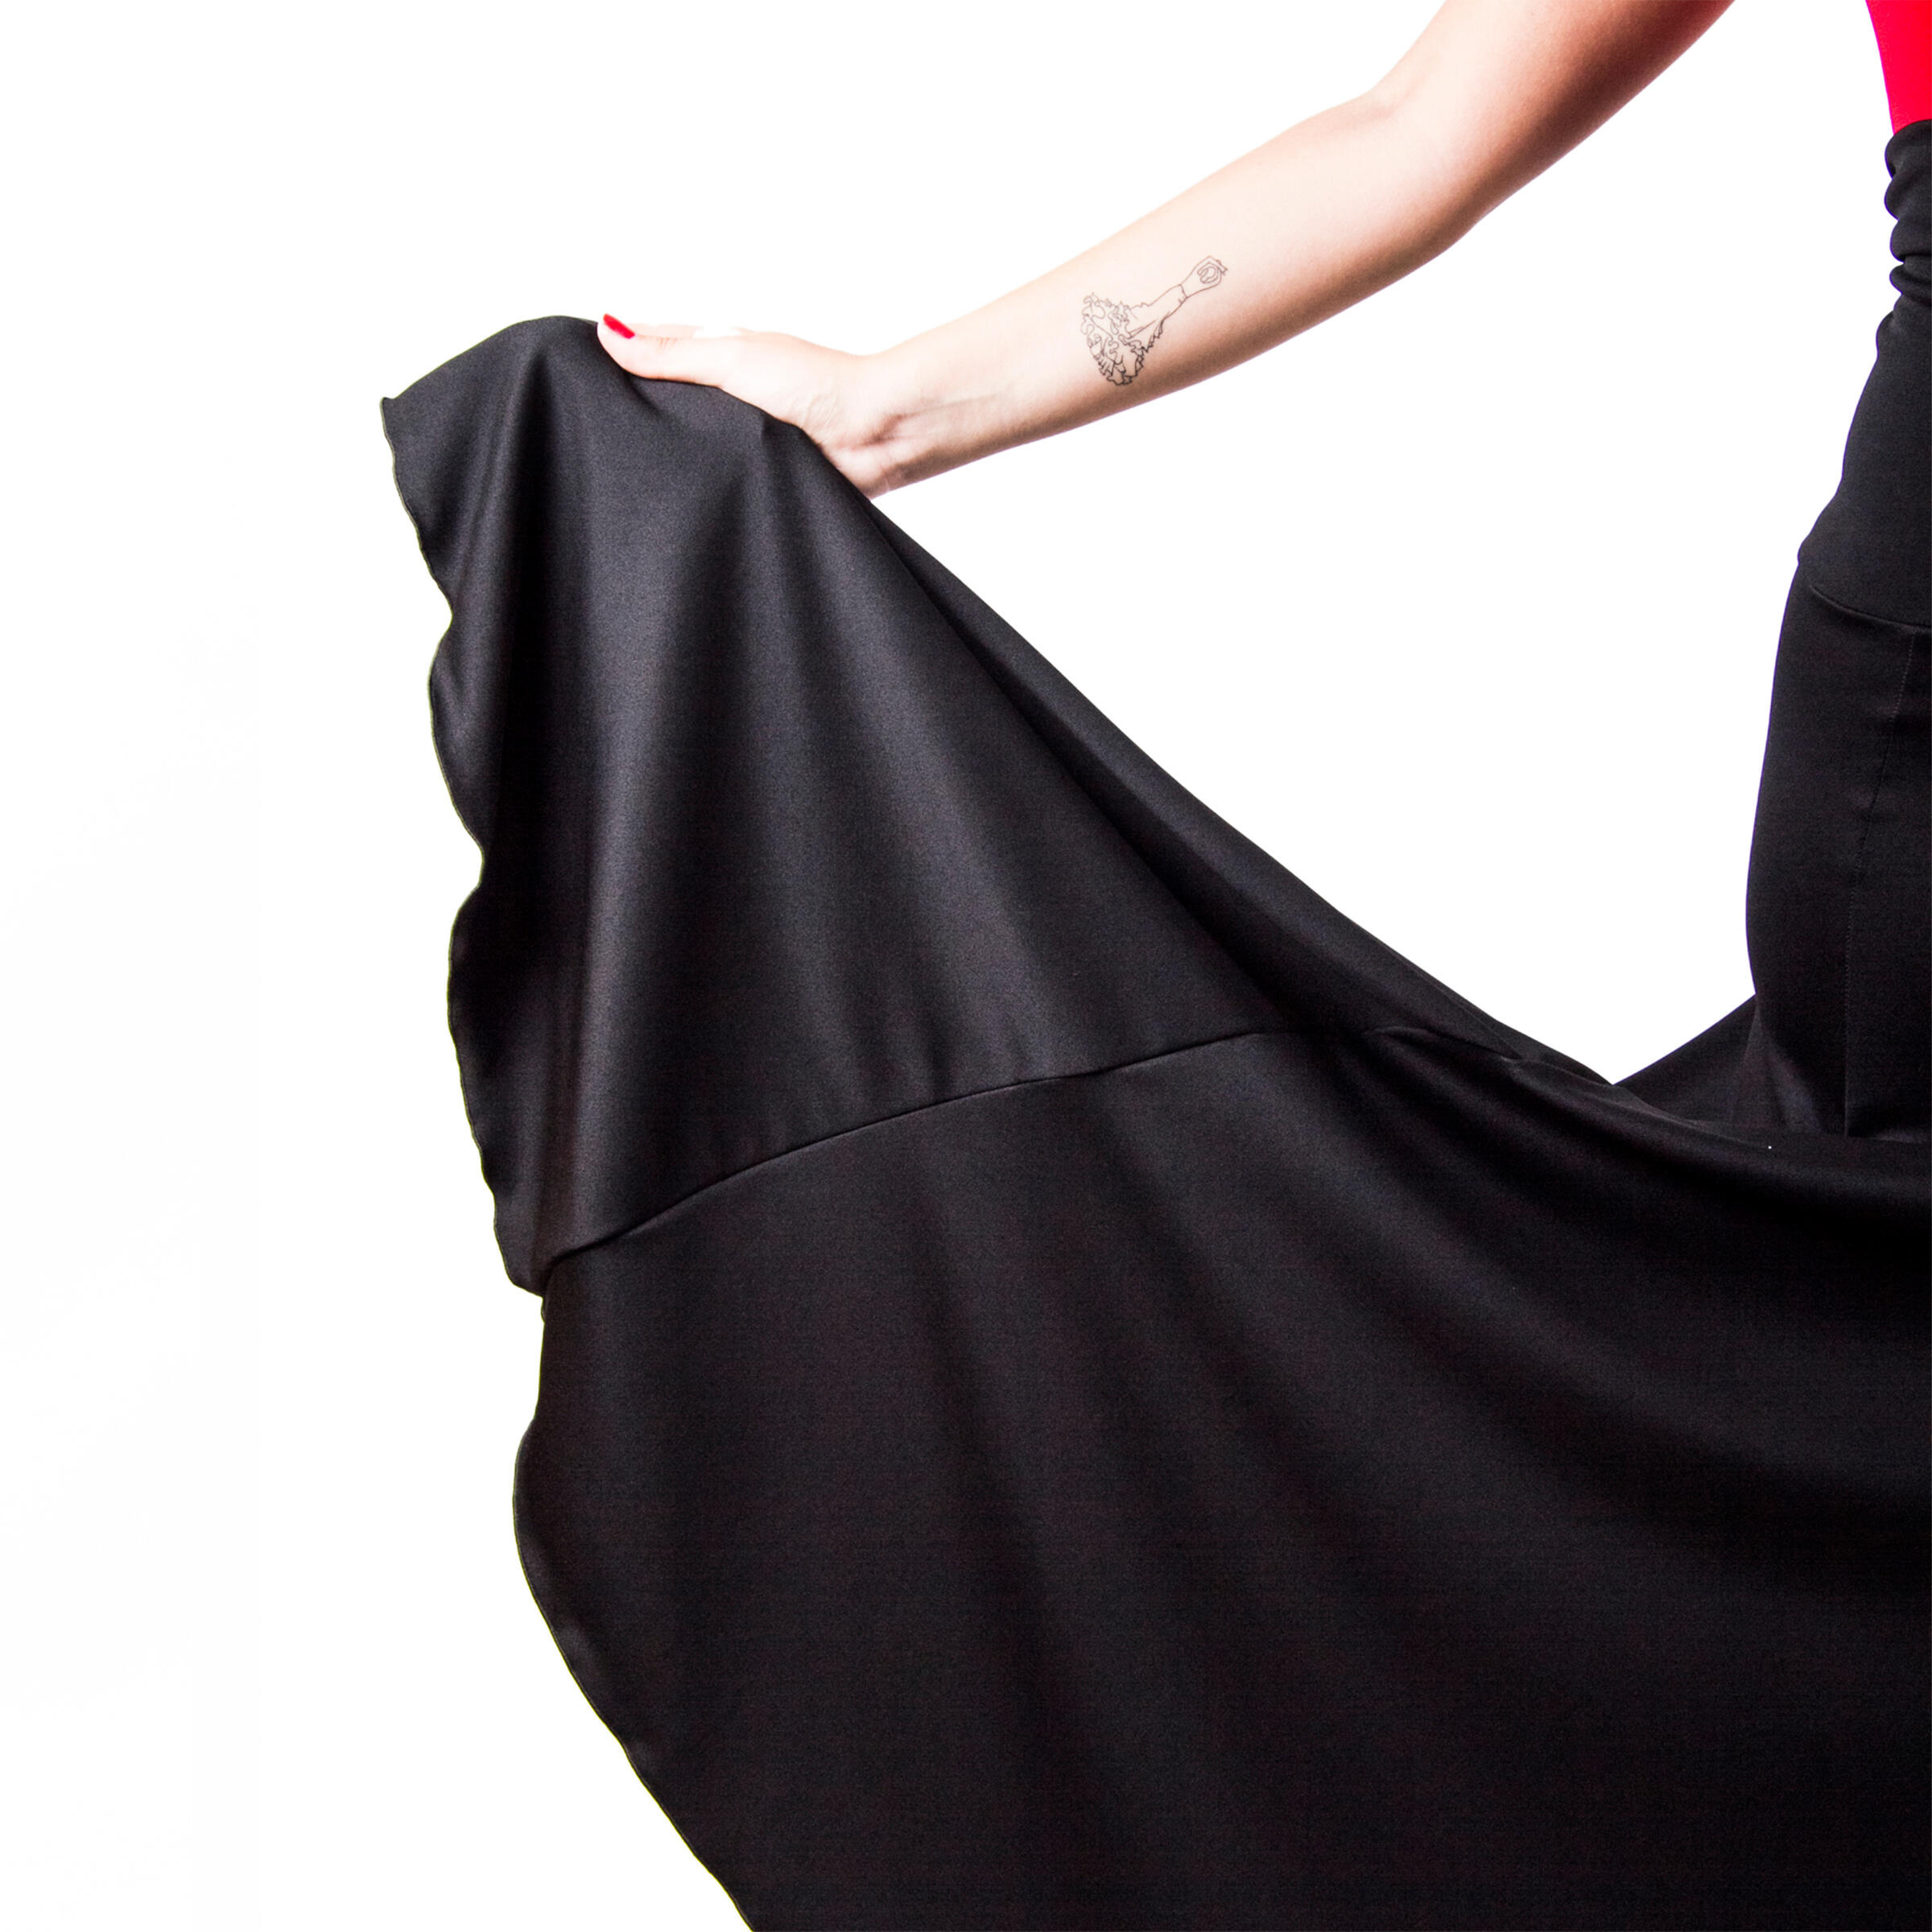 Faldas de flamenca salón cintura normal por 39,90 € - El Rocio